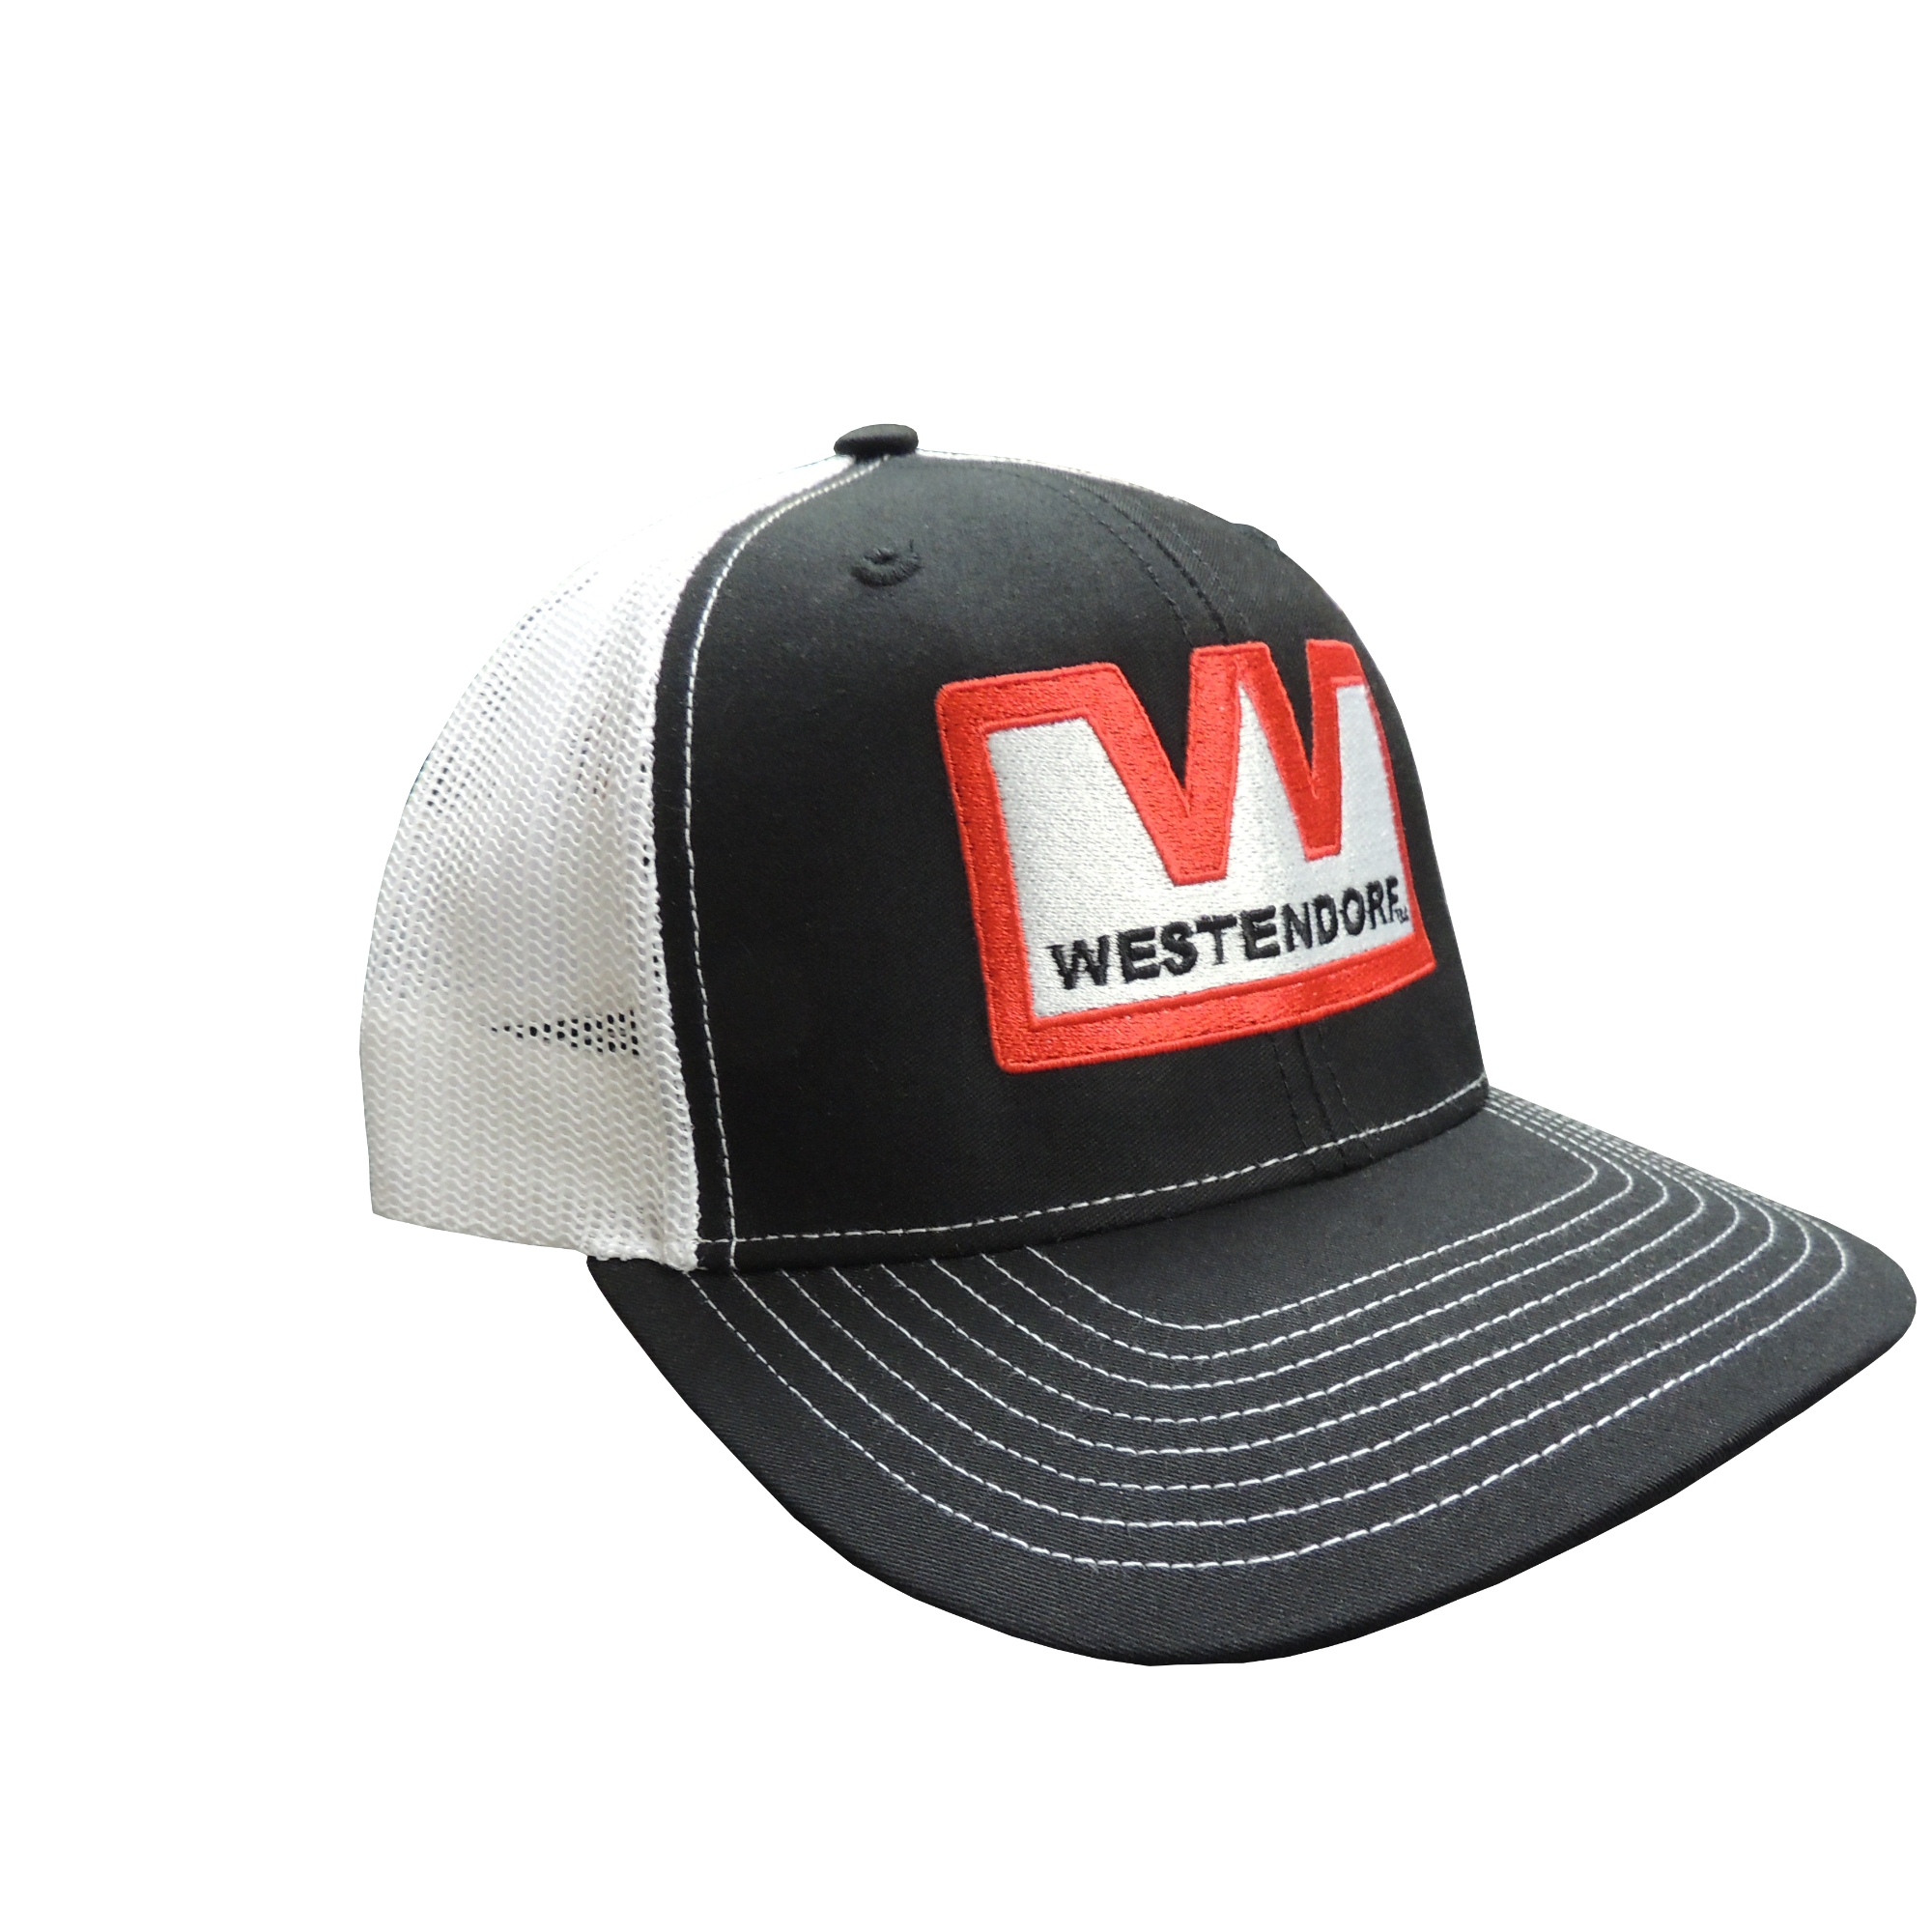 Westendorf Trucker Hat - Adjustable